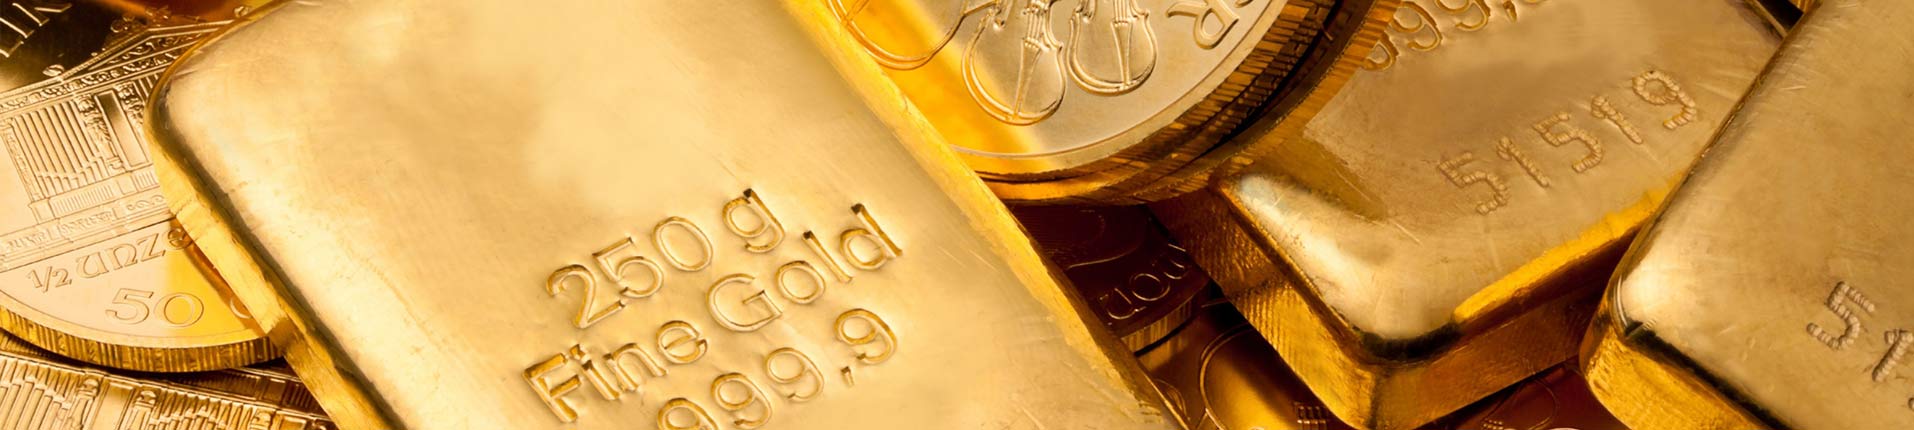 Kopen van goud en zilver bij Goudwisselkantoor